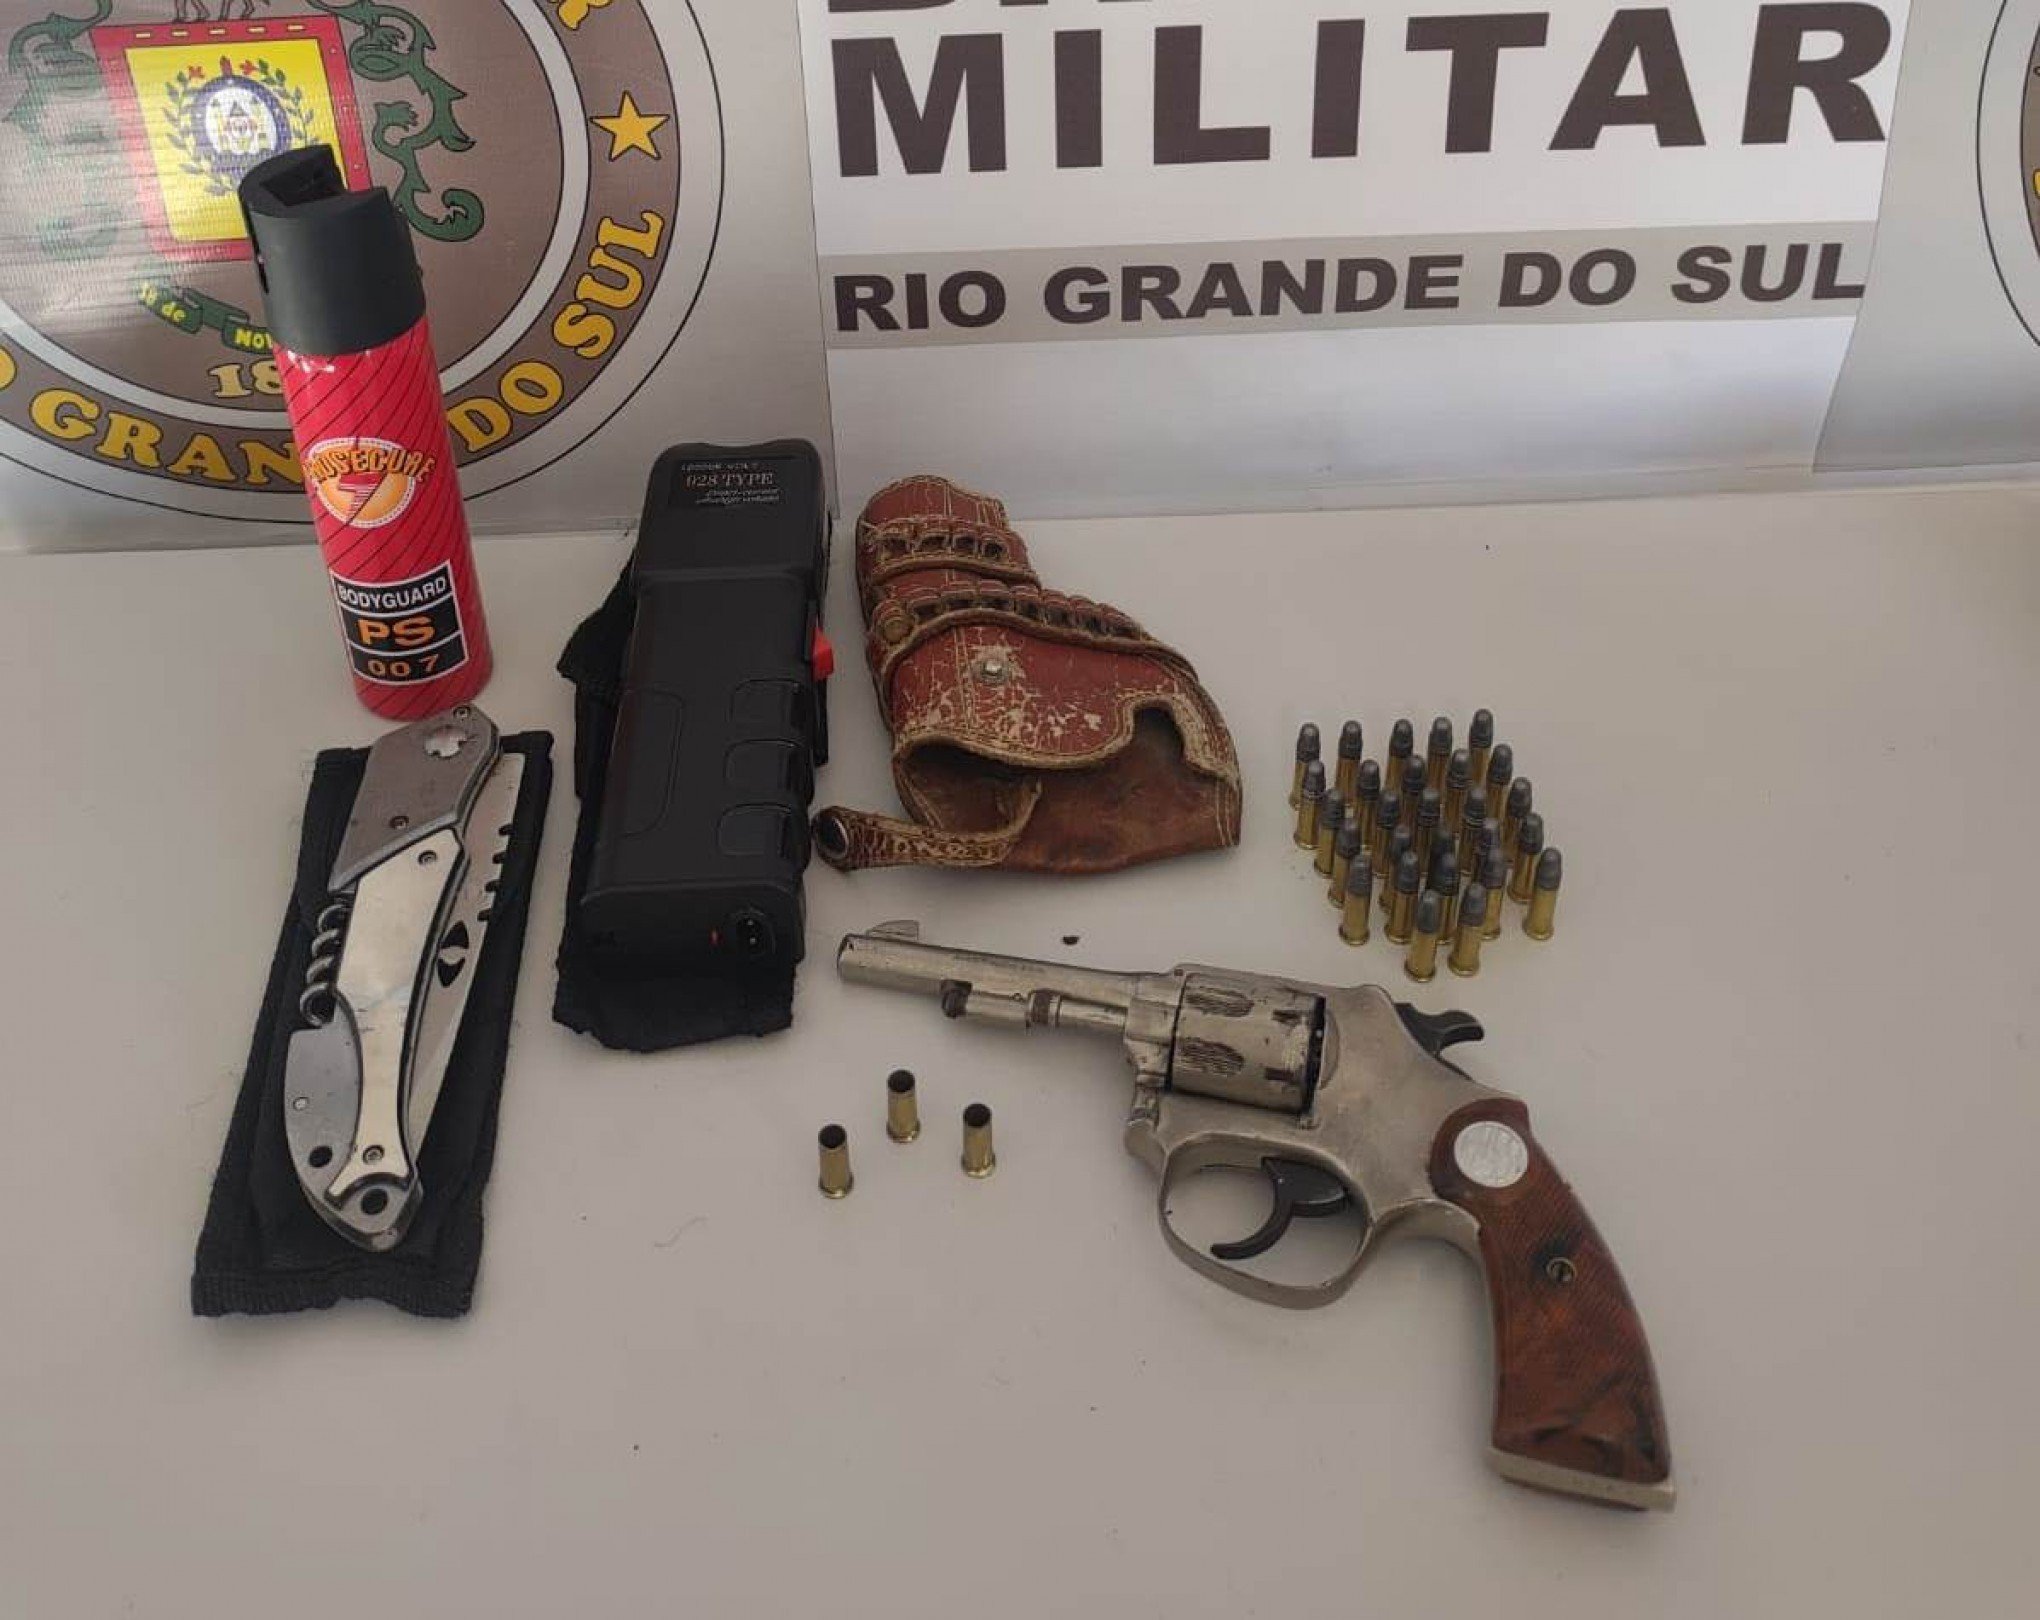 Dois são presos por ameaças com disparos de arma de fogo em Gramado e Canela